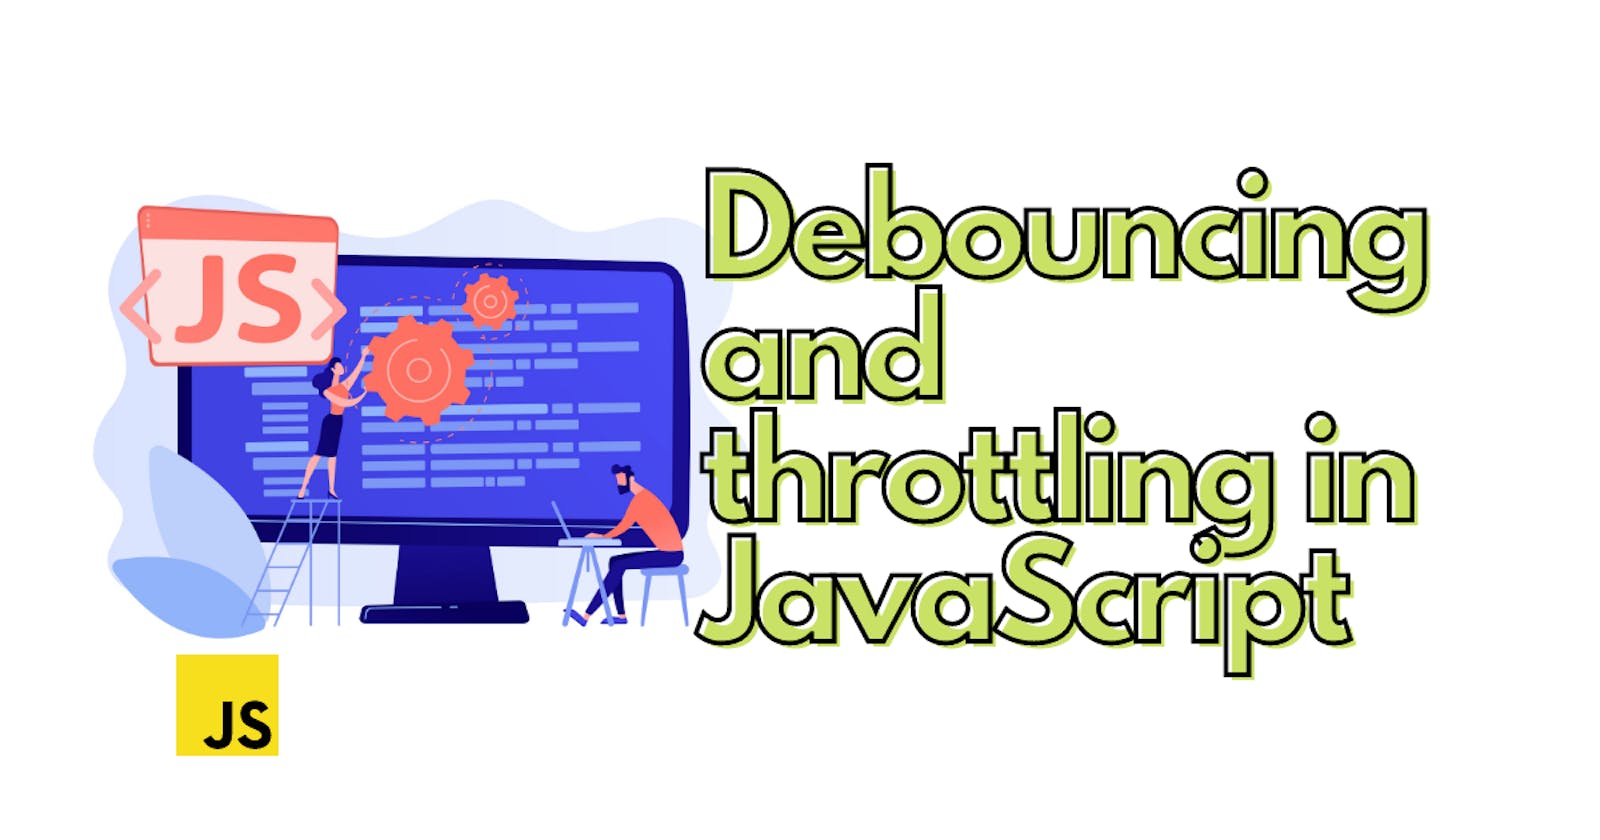 Debouncing and throttling in JavaScript